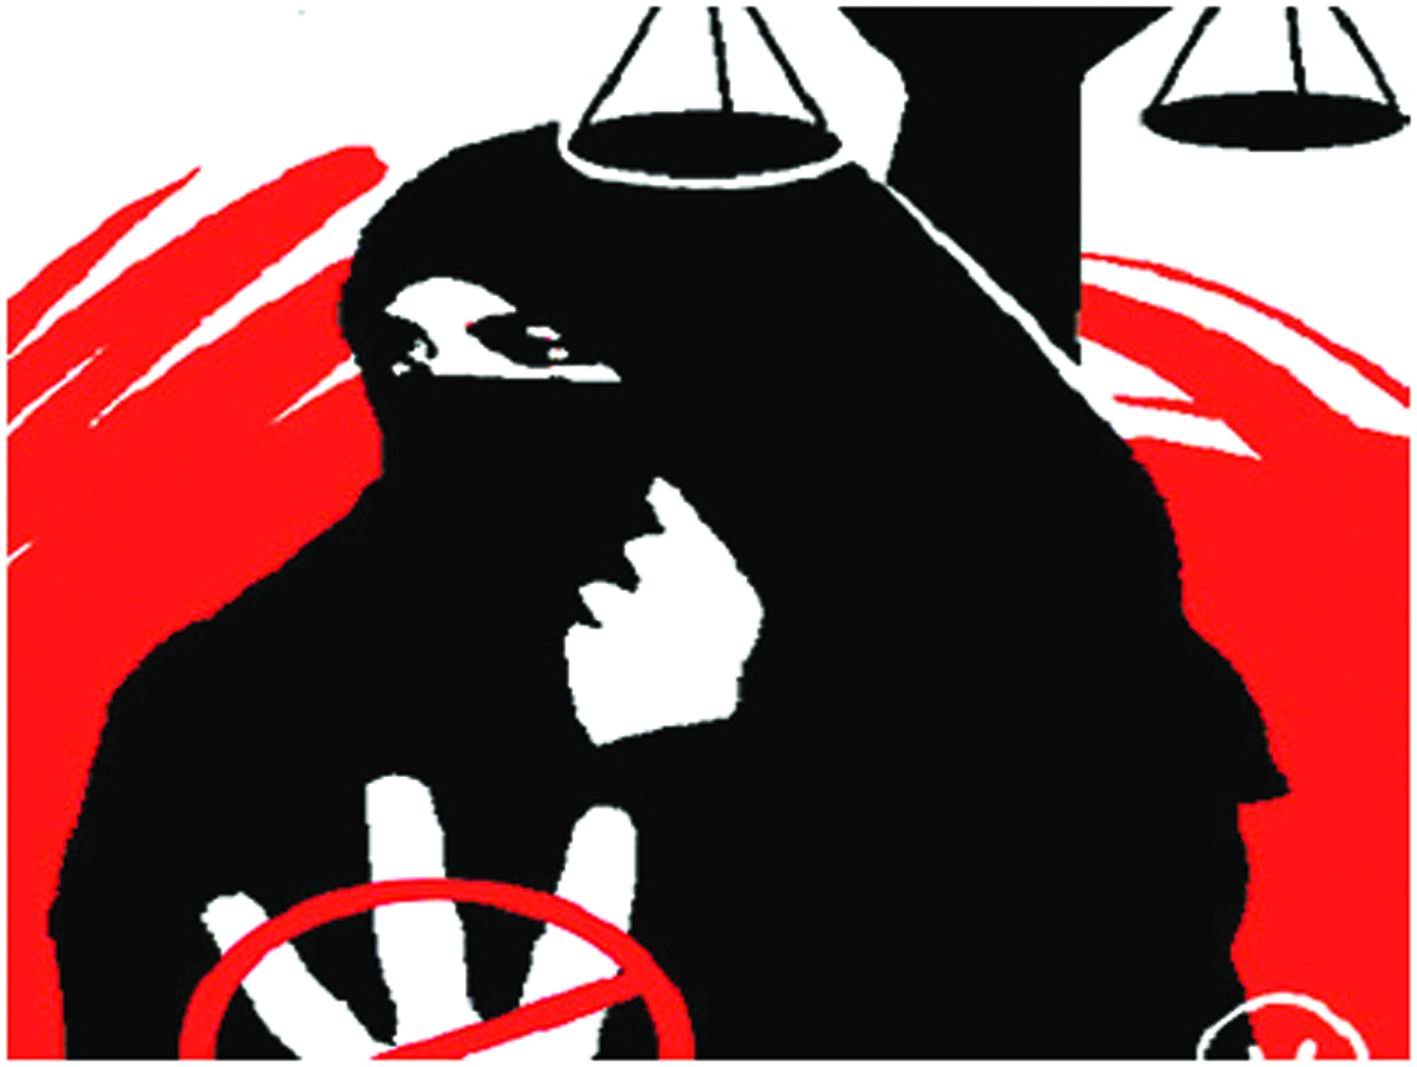 મુસ્લિમ મહિલાઓ શરિયતના કાયદાઓનું રક્ષણ કરશે